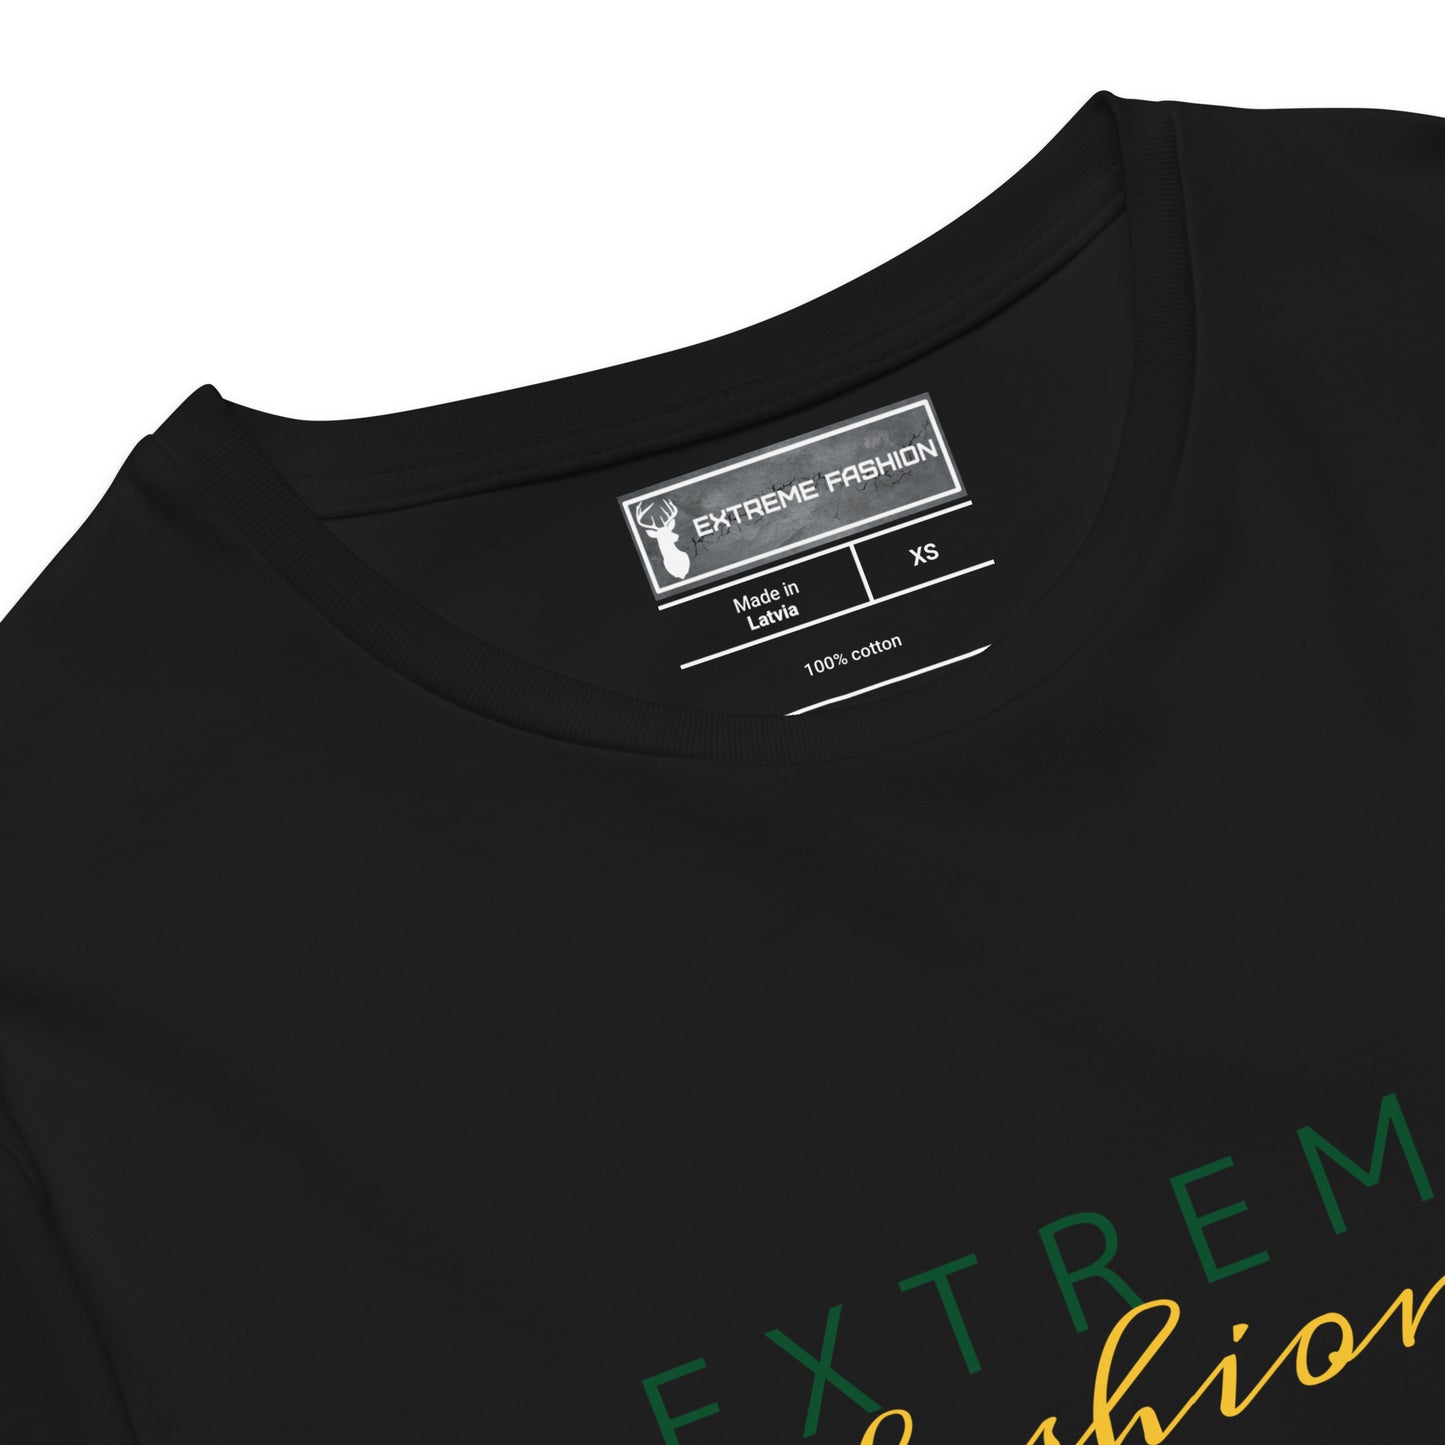 Camiseta premium Extreme Fashion